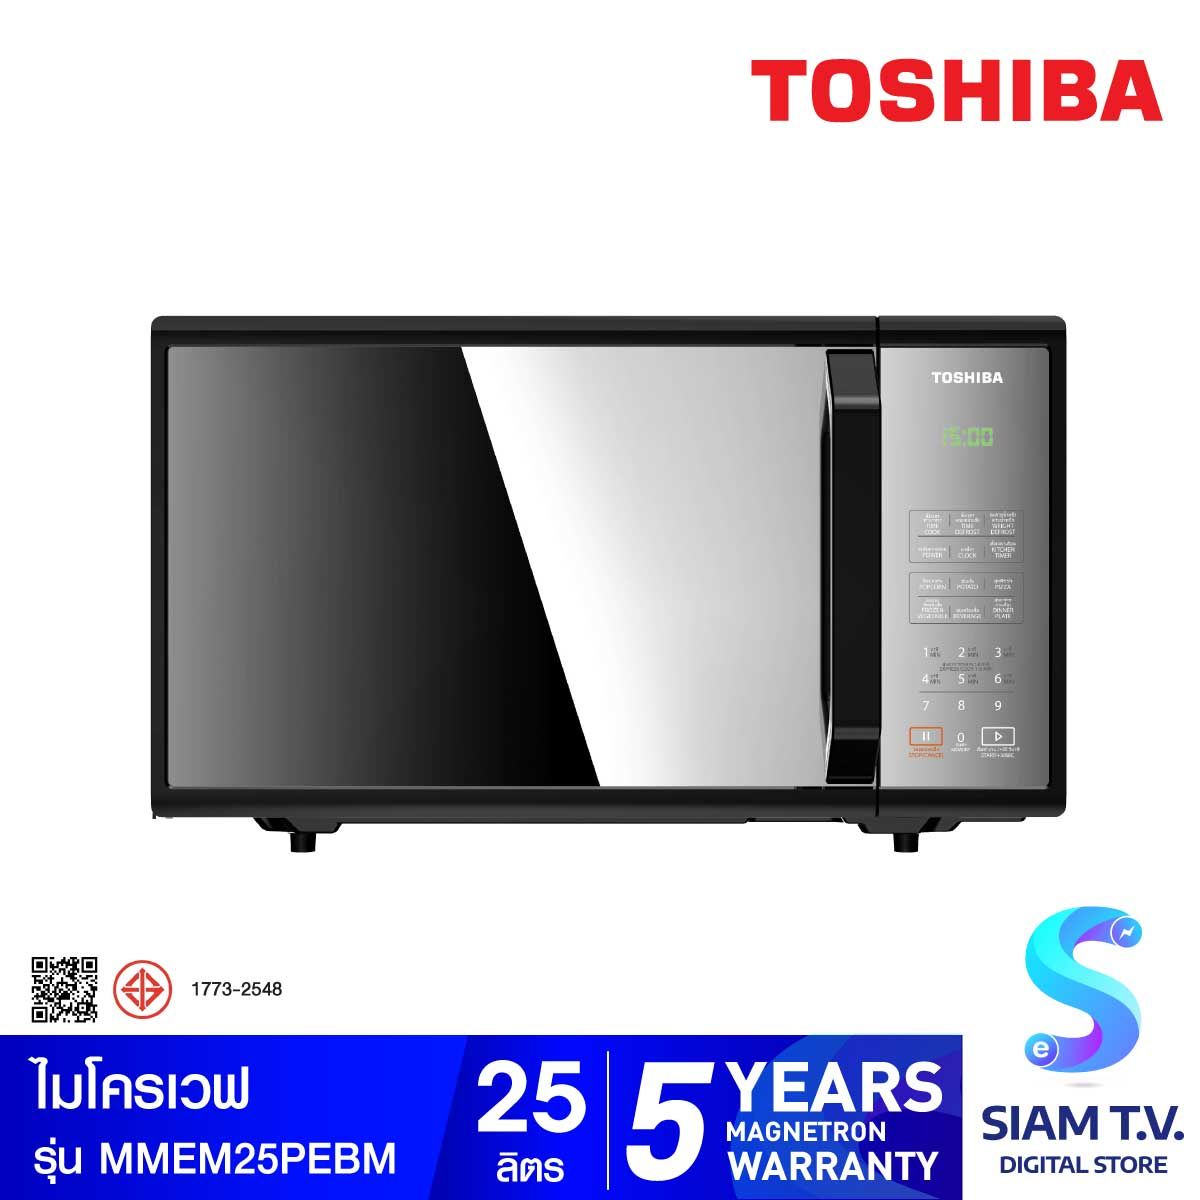 TOSHIBA ไมโครเวฟ25L 800W ดิจิตอล สีดำ รุ่น MMEM25PEBM